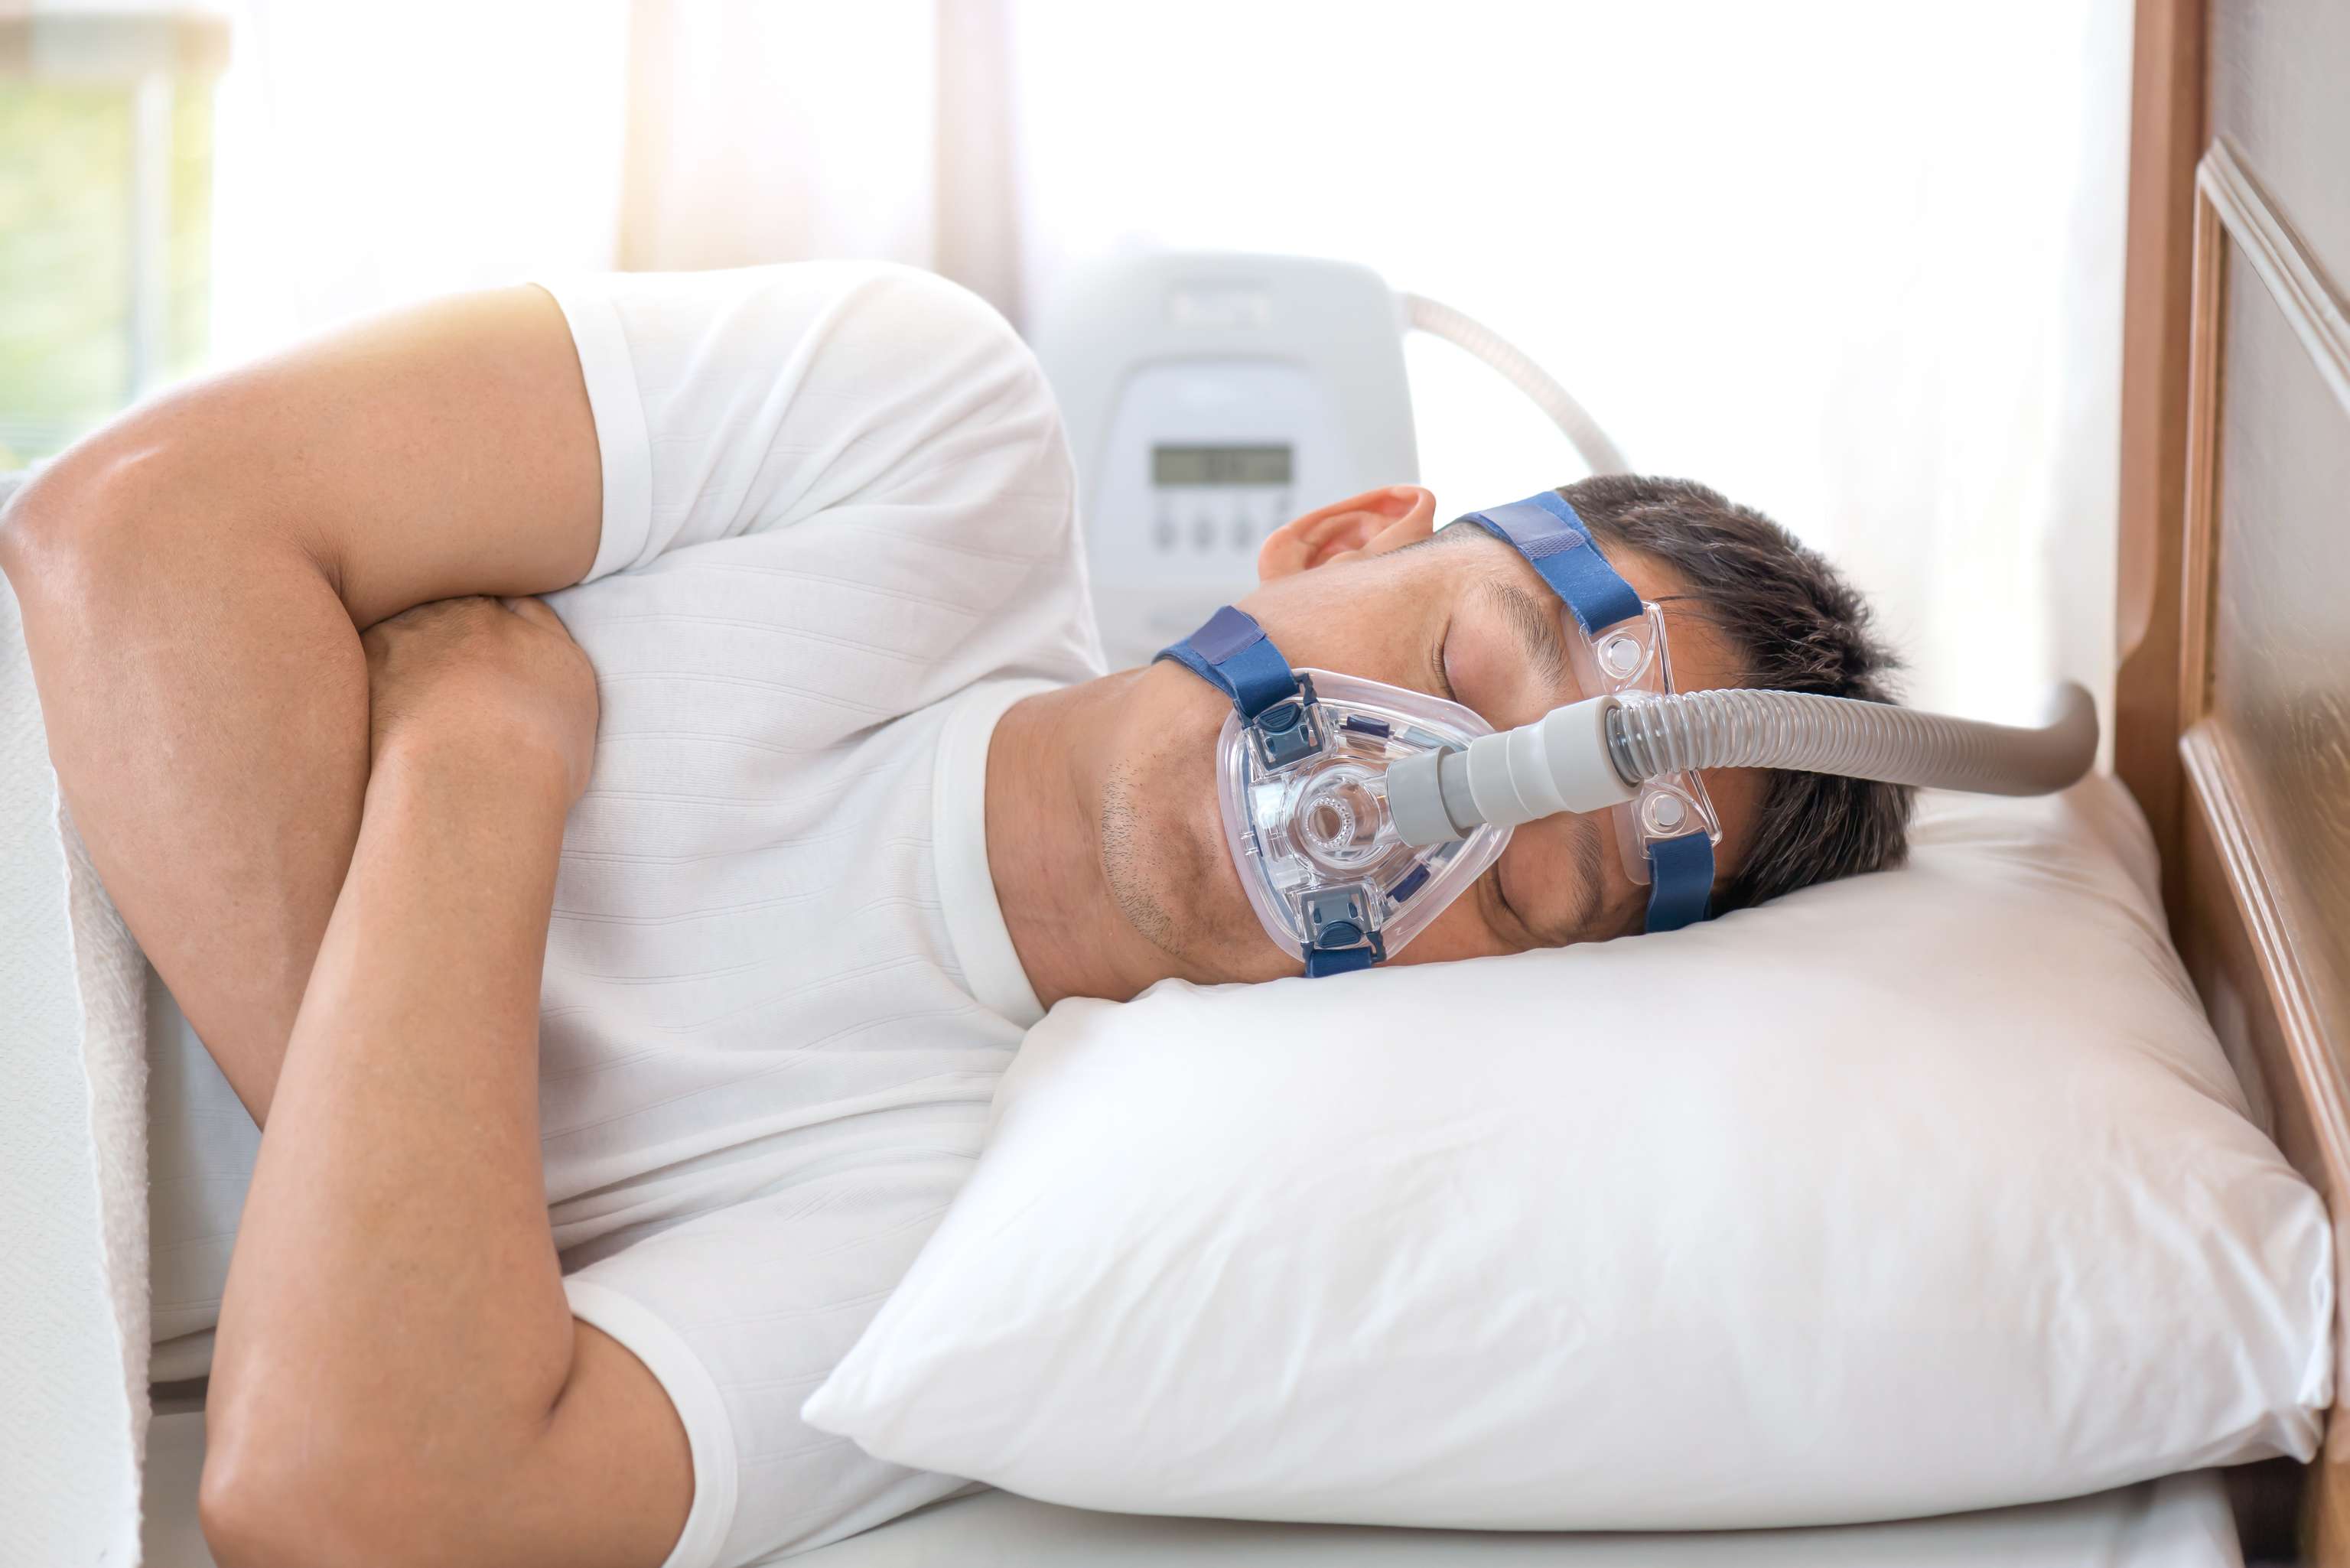 Zusammenhang zwischen Schlafapnoe und erhöhtem Blutdruck bei Jugendlichen?